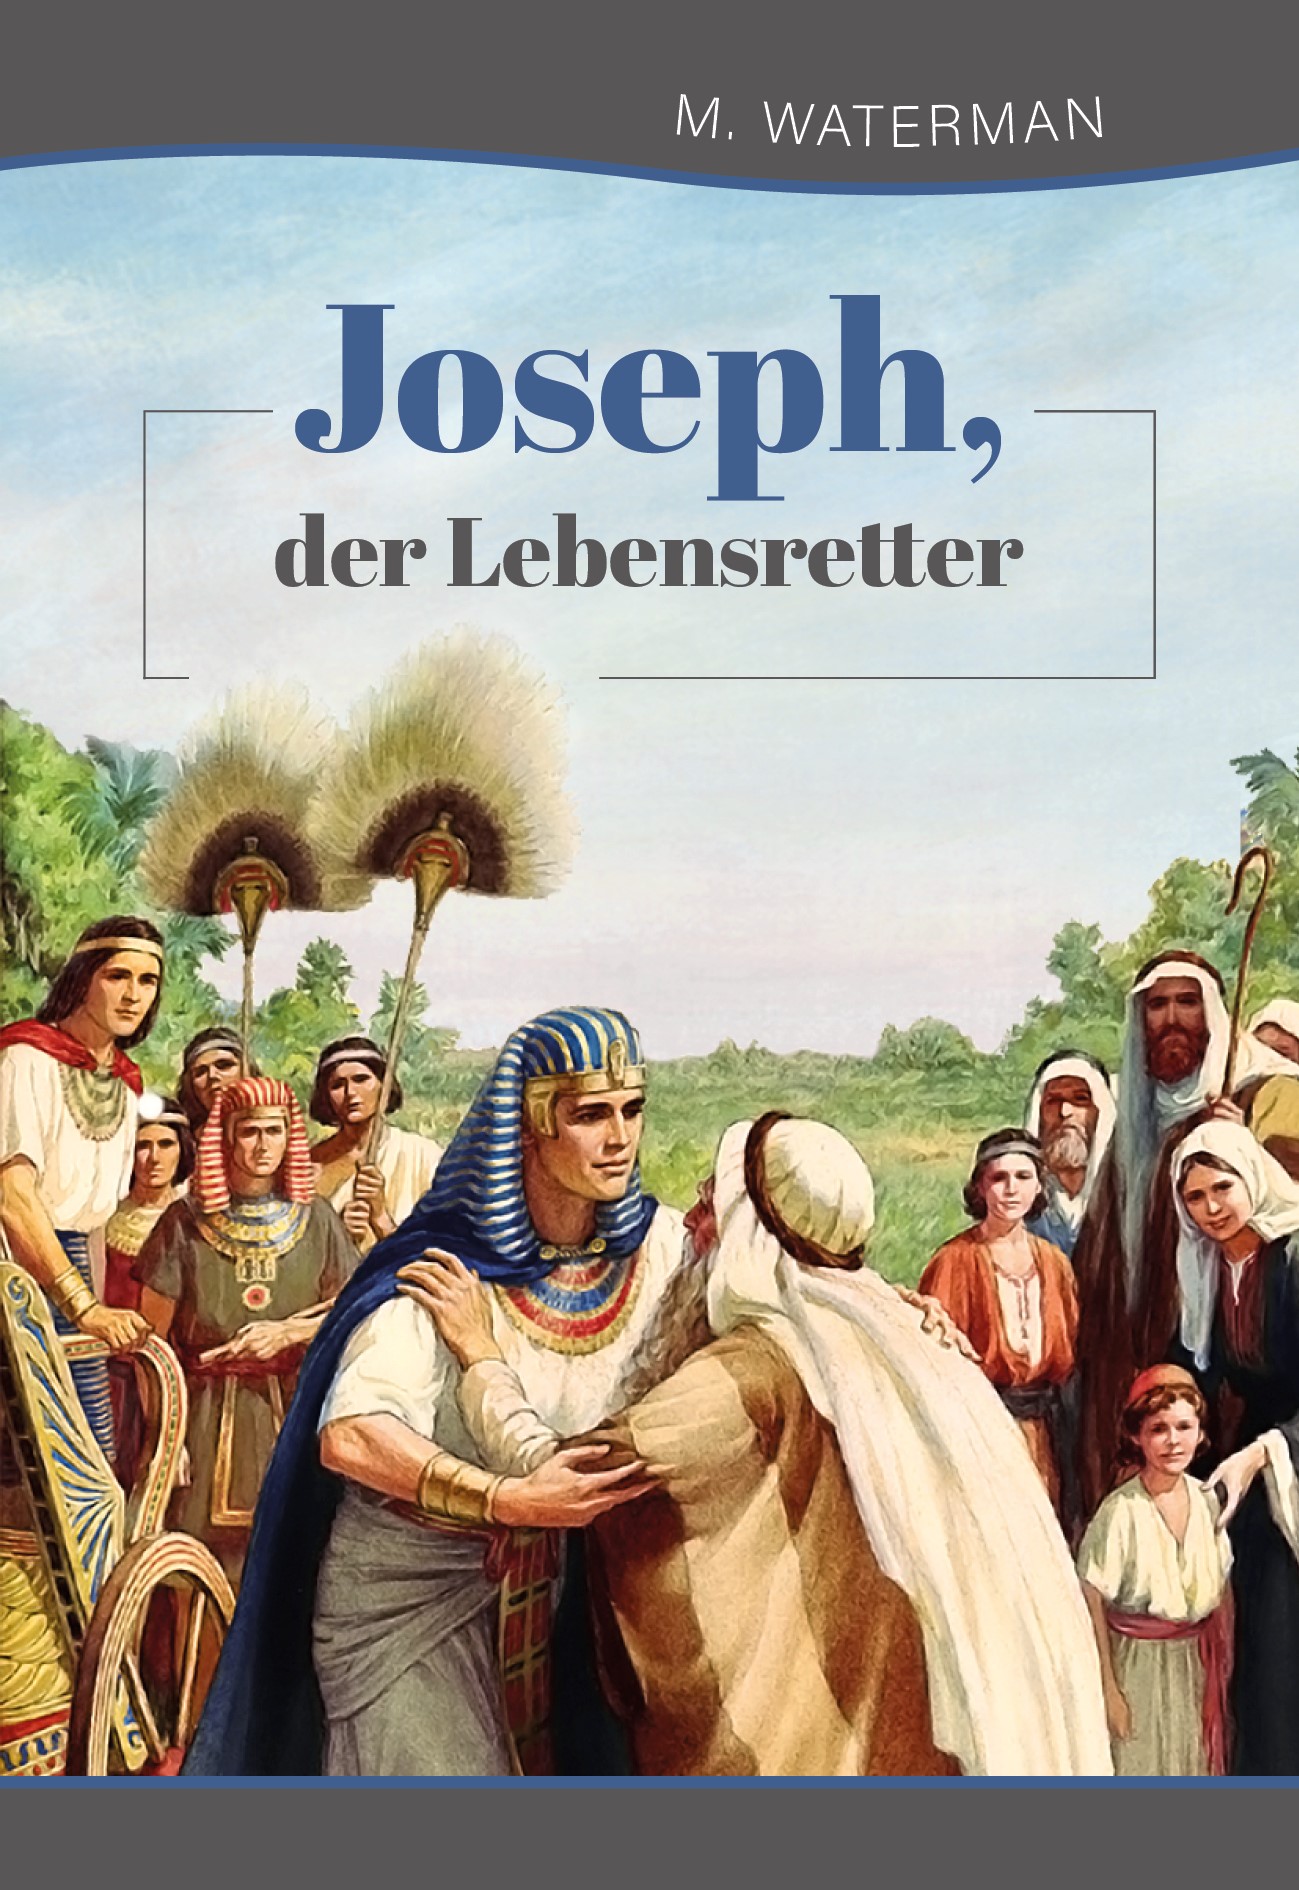 Joseph, der Lebensretter